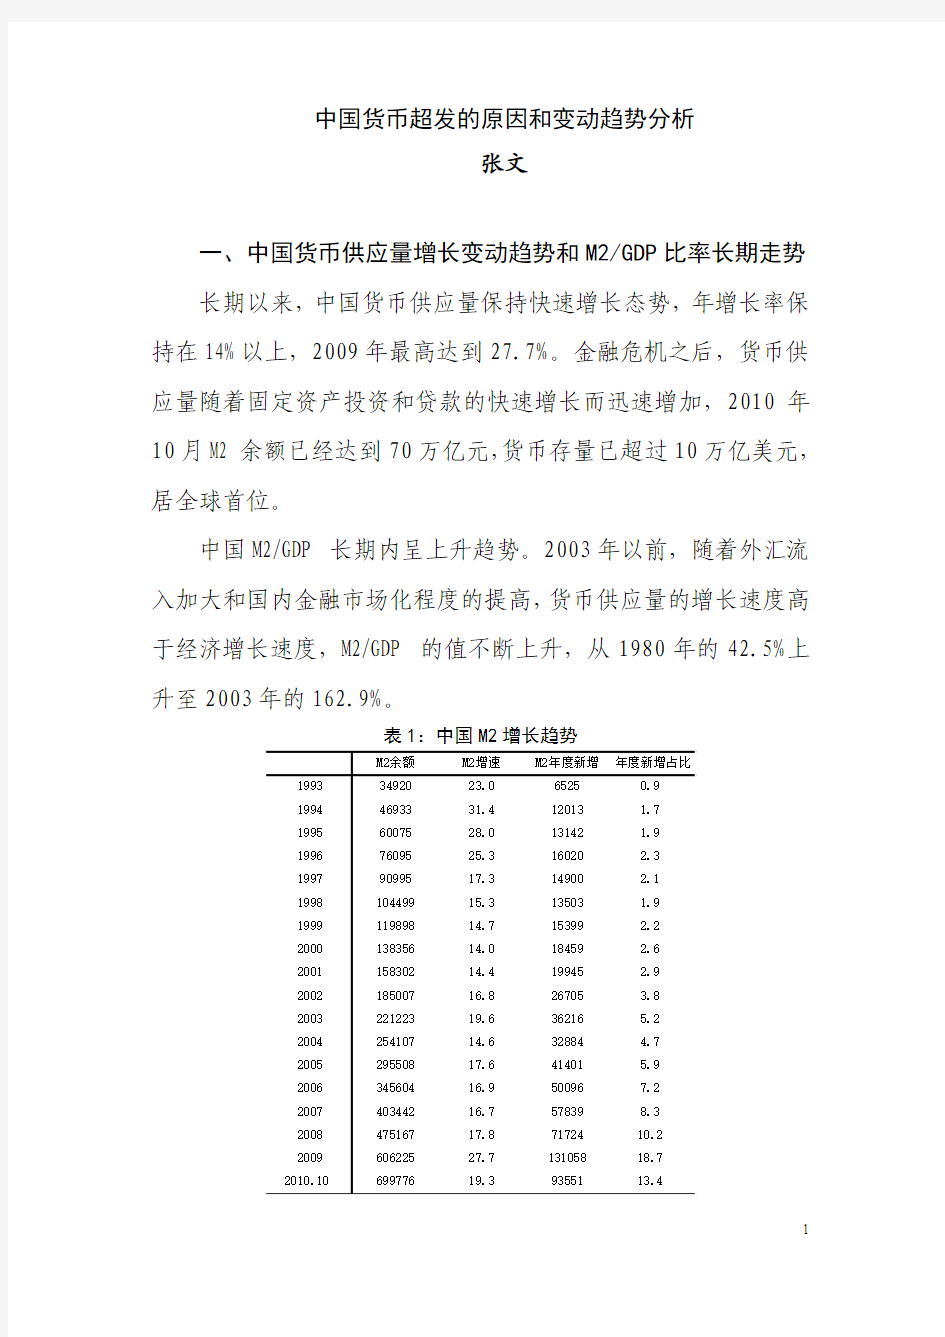 二、中国M2GDP比率的长期走势